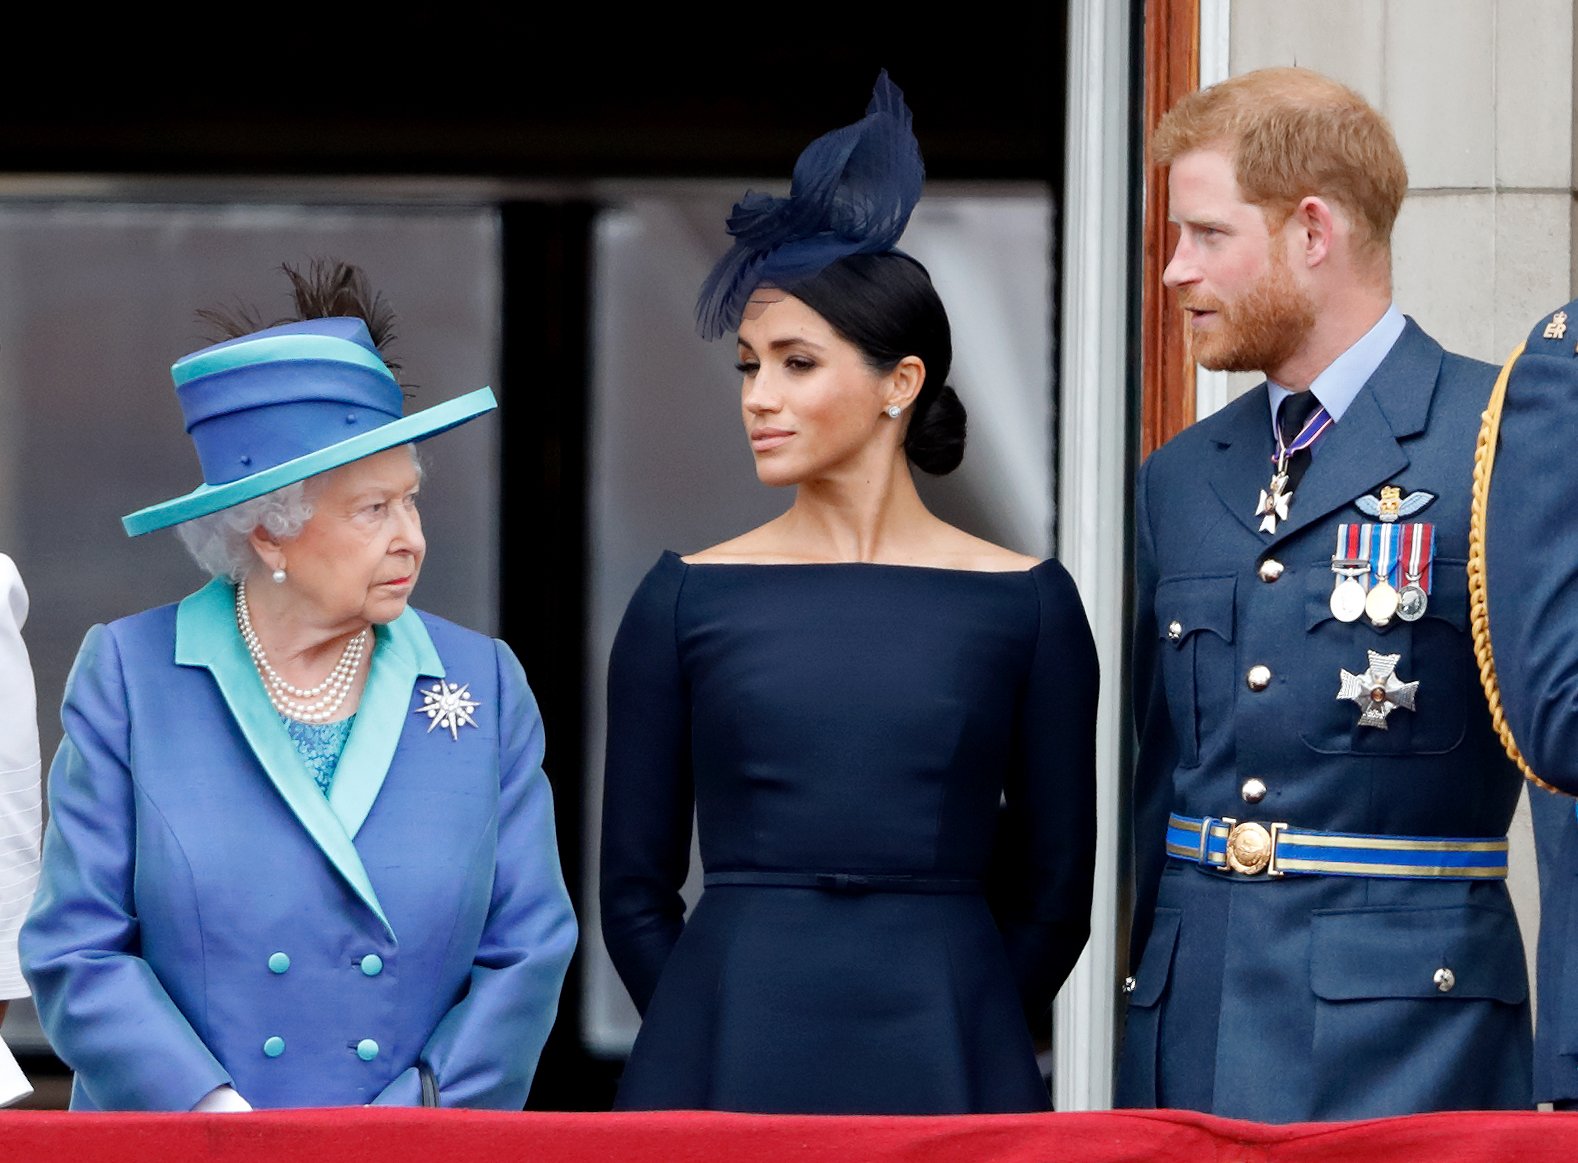 La reine Elizabeth II, Meghan, duchesse de Sussex, et le prince Harry, duc de Sussex, assistent à un défilé aérien pour marquer le centenaire de la Royal Air Force depuis le balcon du palais de Buckingham, le 10 juillet 2018 à Londres, en Angleterre | Source : Getty Images